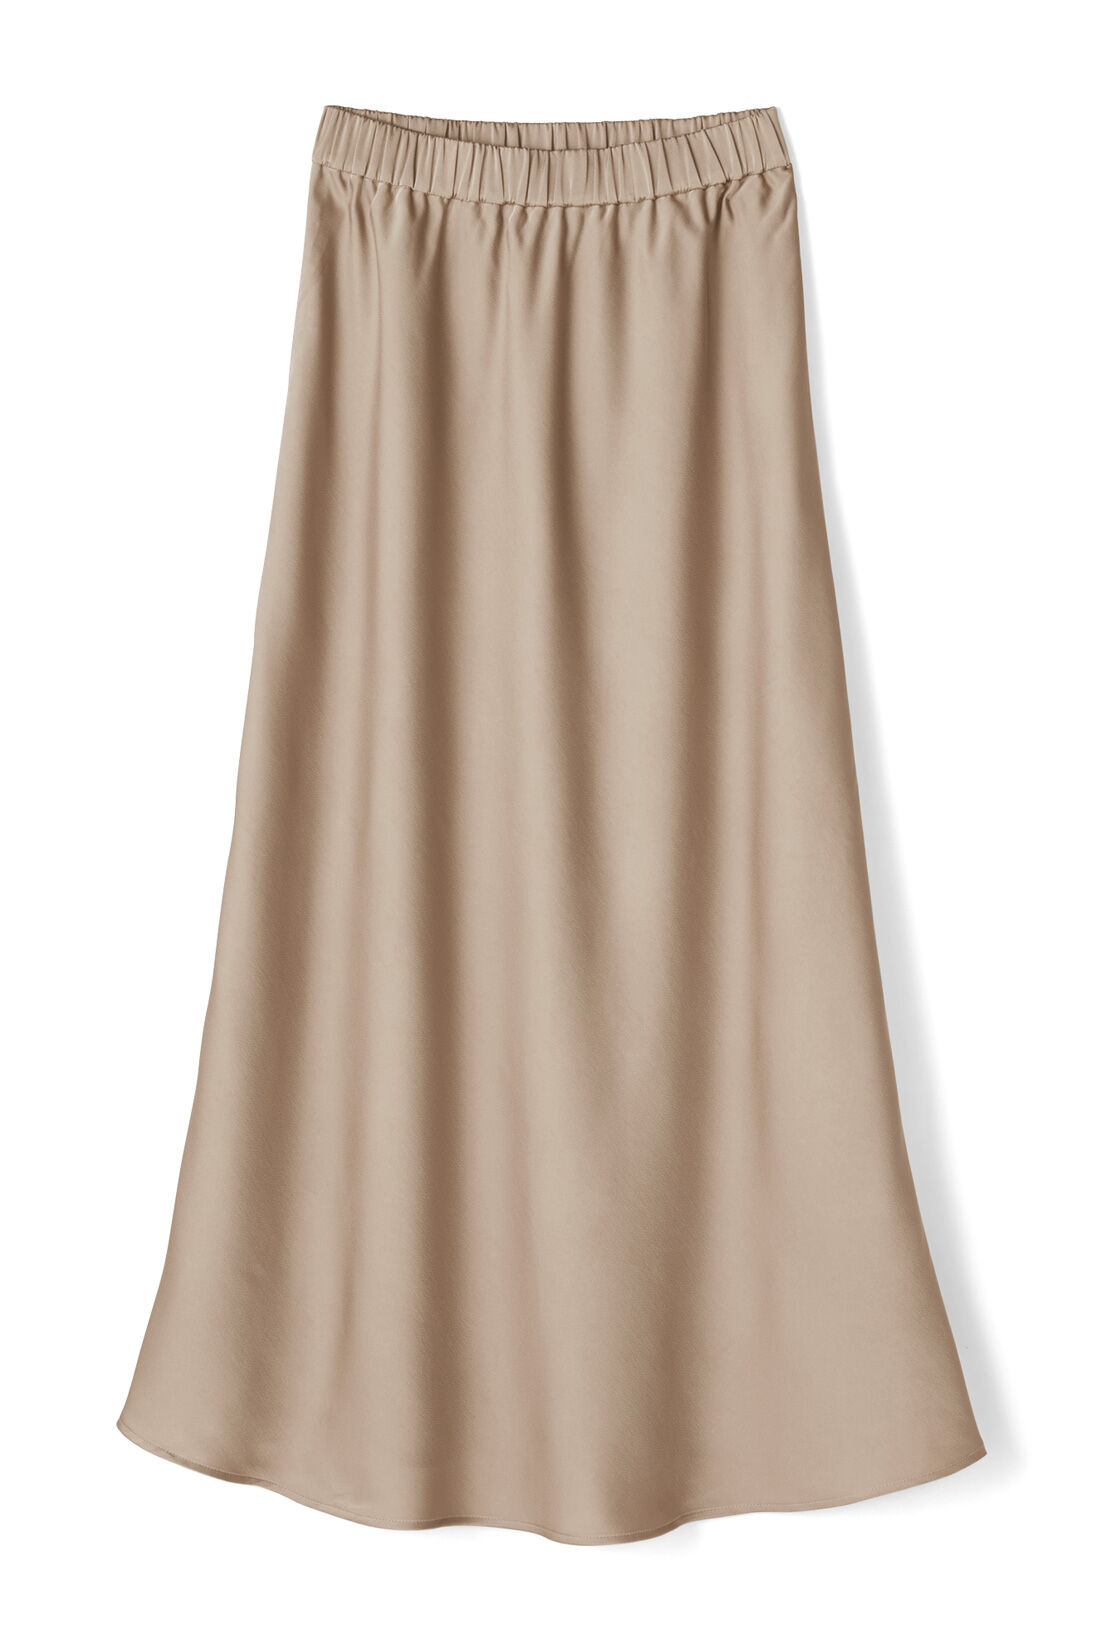 IEDIT|IEDIT[イディット]　サテンの光沢が美しいセミサーキュラースカート〈ベージュ〉|〈ベージュ〉